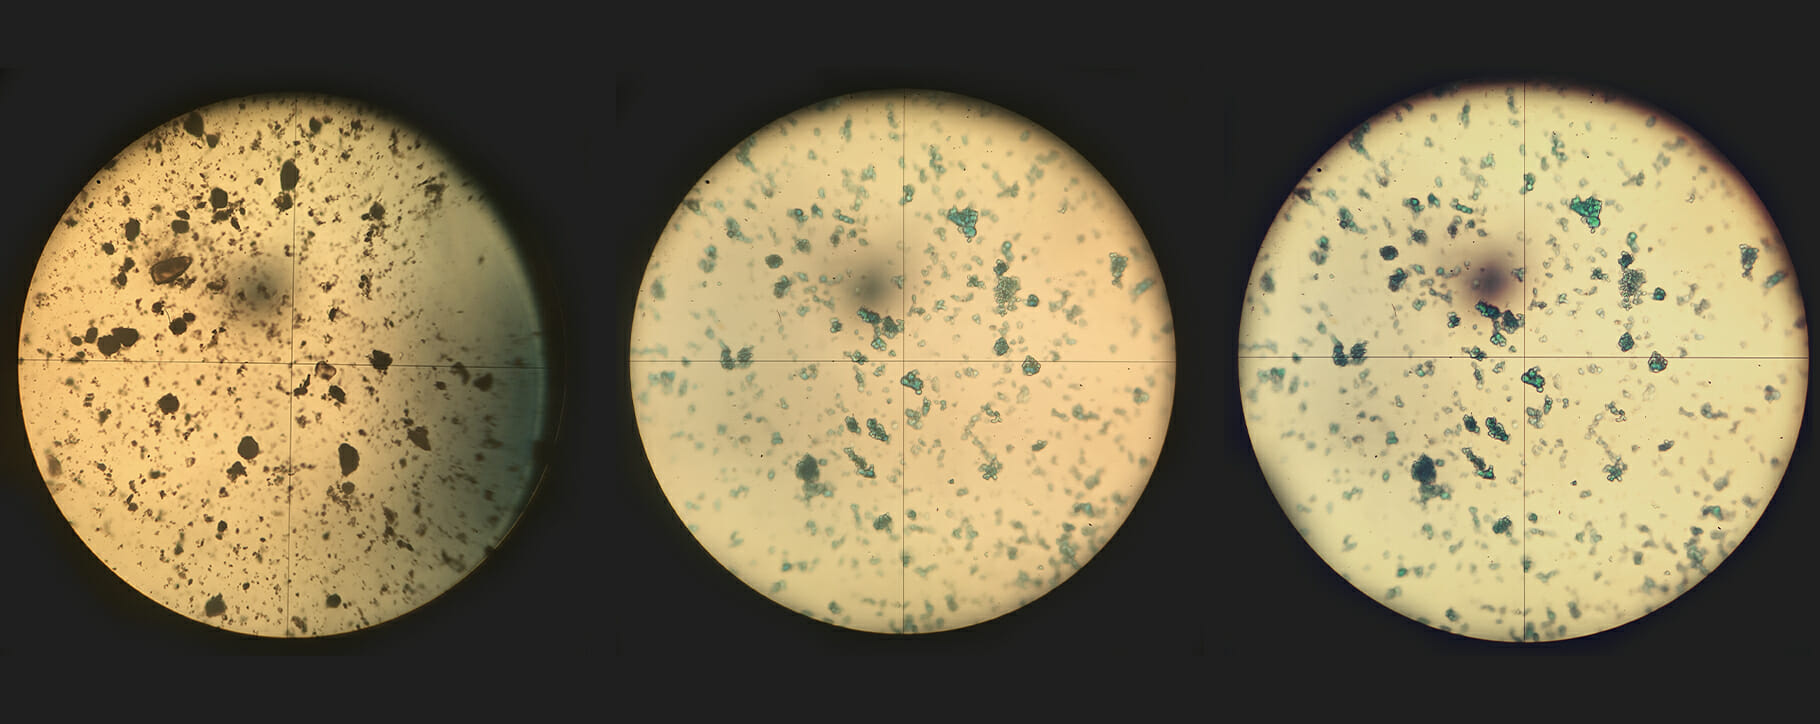 Pigments Under Microscope